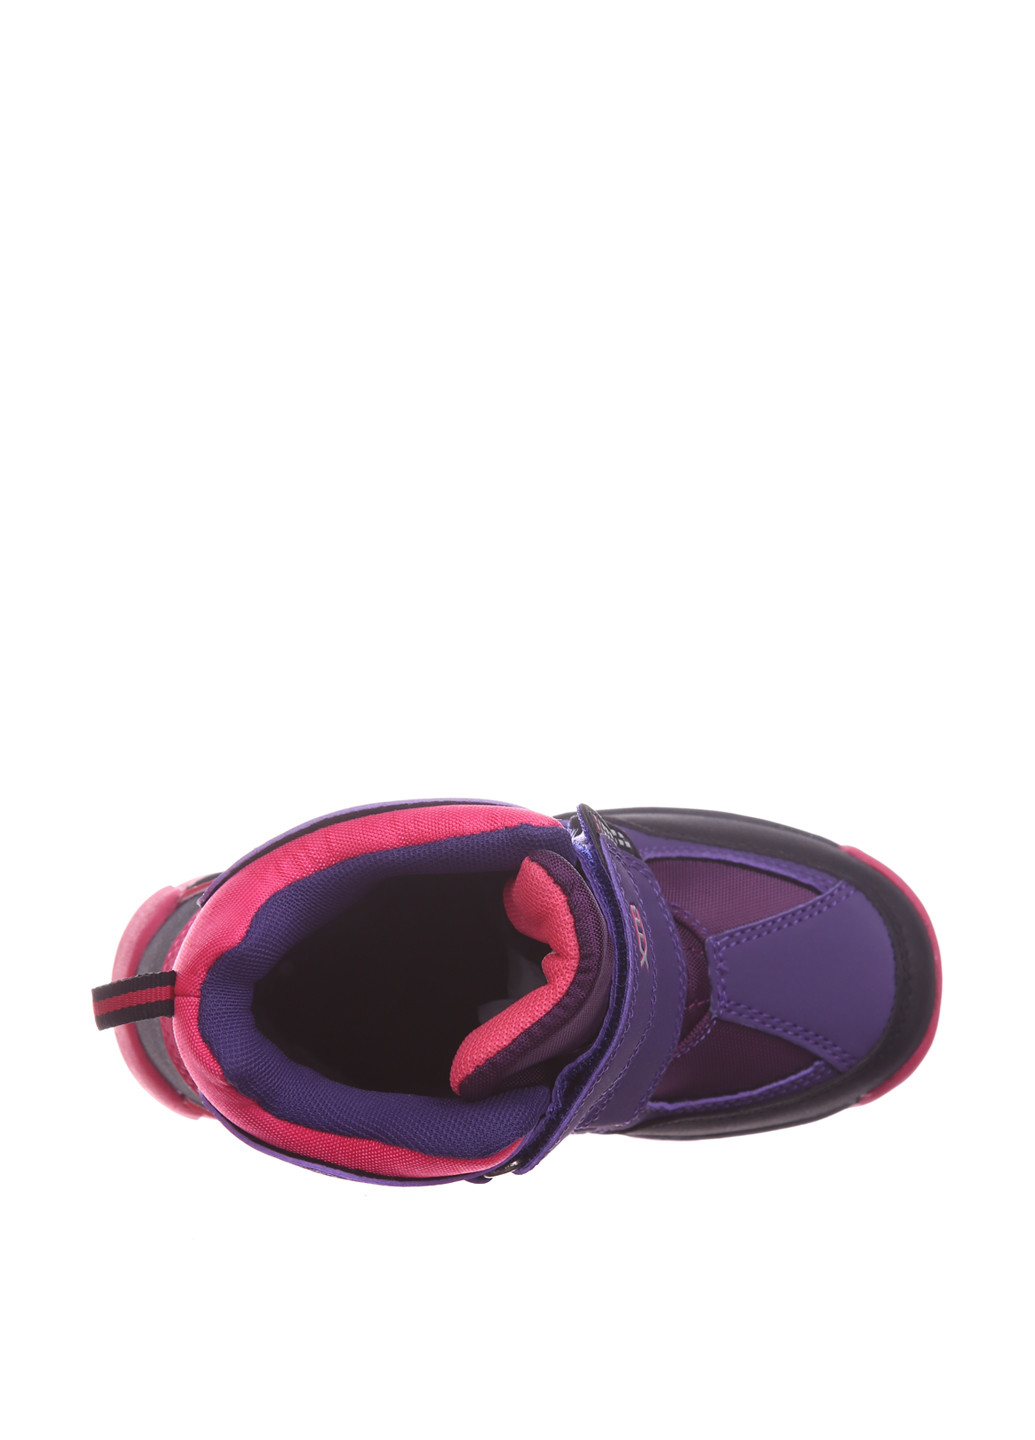 Фиолетовые кэжуал зимние ботинки Xiaotiaoban